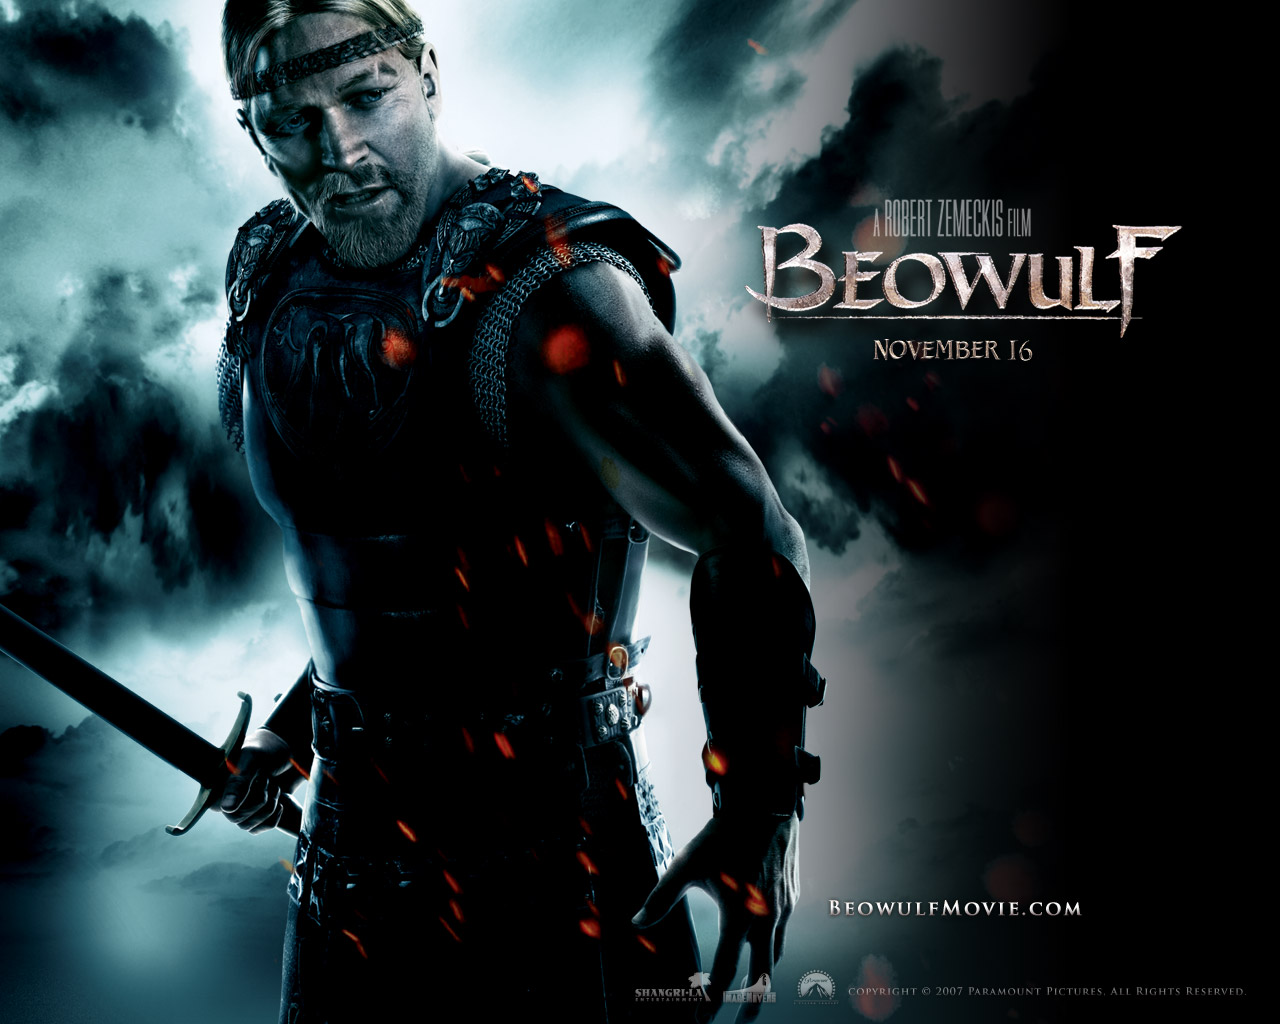 壁纸1280x1024电影壁纸 贝奥武夫 降龙伏魔 Beowulf 2007 贝奥武夫 北海的诅咒 贝奥武夫 电影壁纸 Movie Wallpaper Beowulf 2007壁纸 《贝奥武夫 Beowulf(2007)》壁纸 《贝奥武夫 Beowulf(2007)》图片 《贝奥武夫 Beowulf(2007)》素材 影视壁纸 影视图库 影视图片素材桌面壁纸